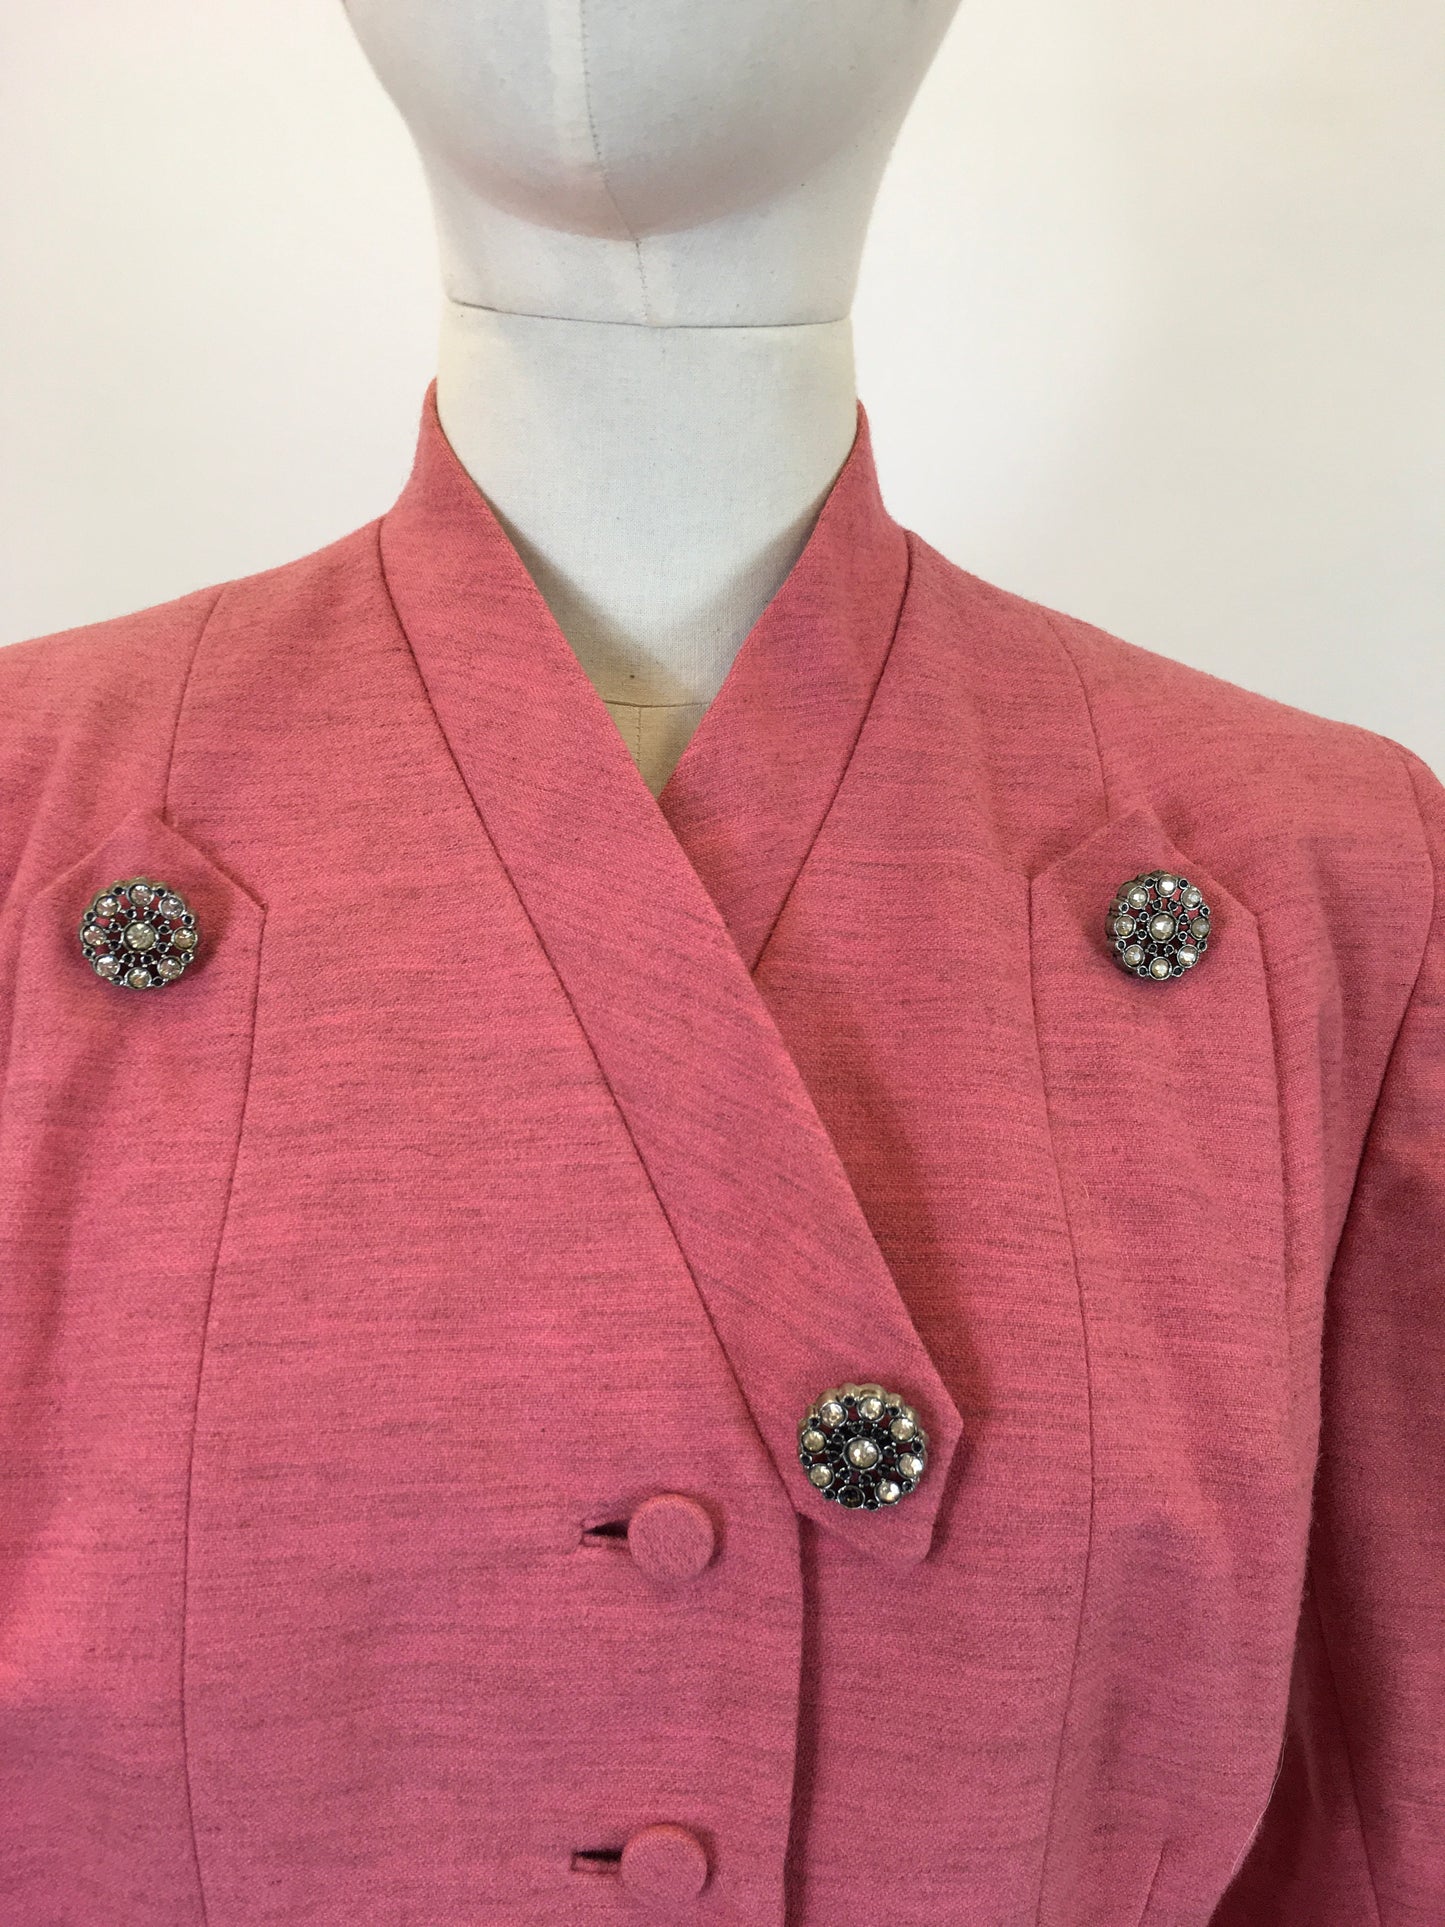 Original  late 40’s/ early 50's  Fabulous jacket - in Bubblegum Pink grain